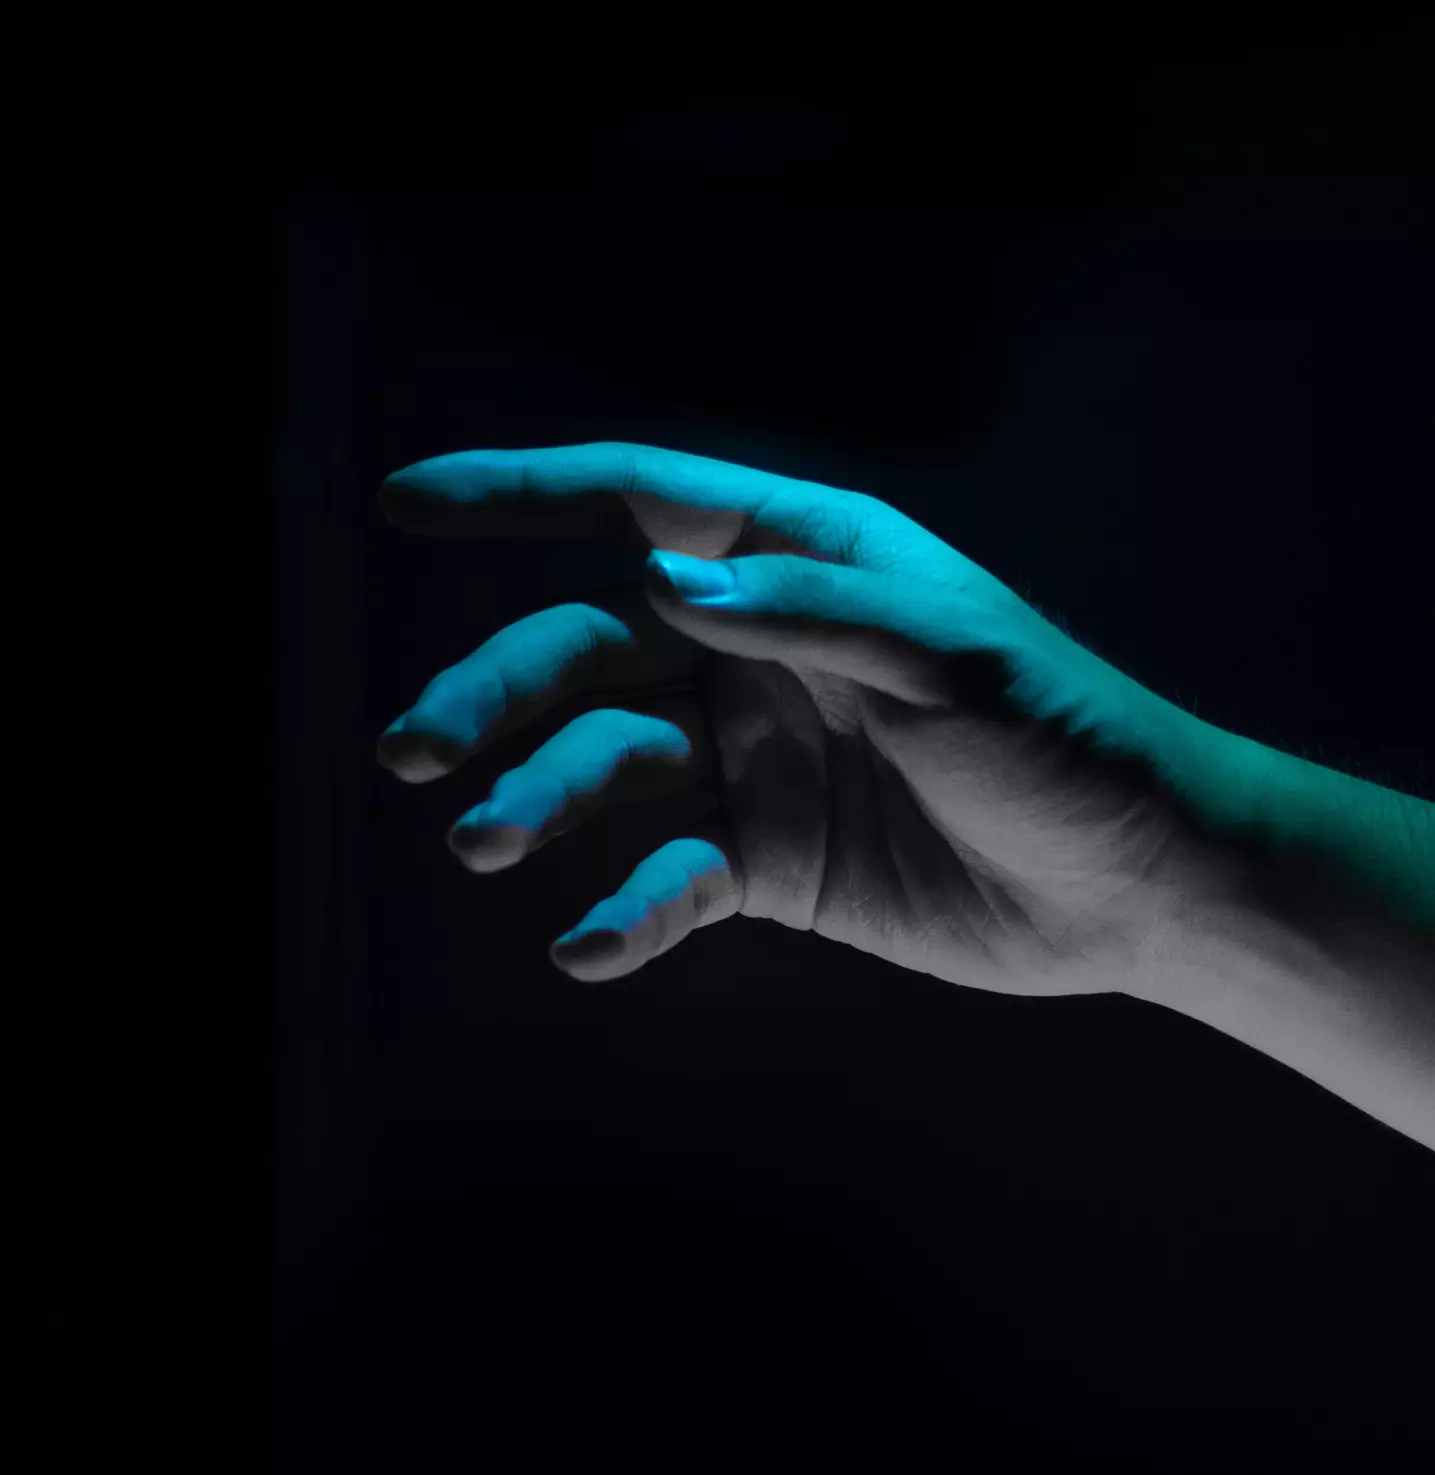 Mão sob a luz neon